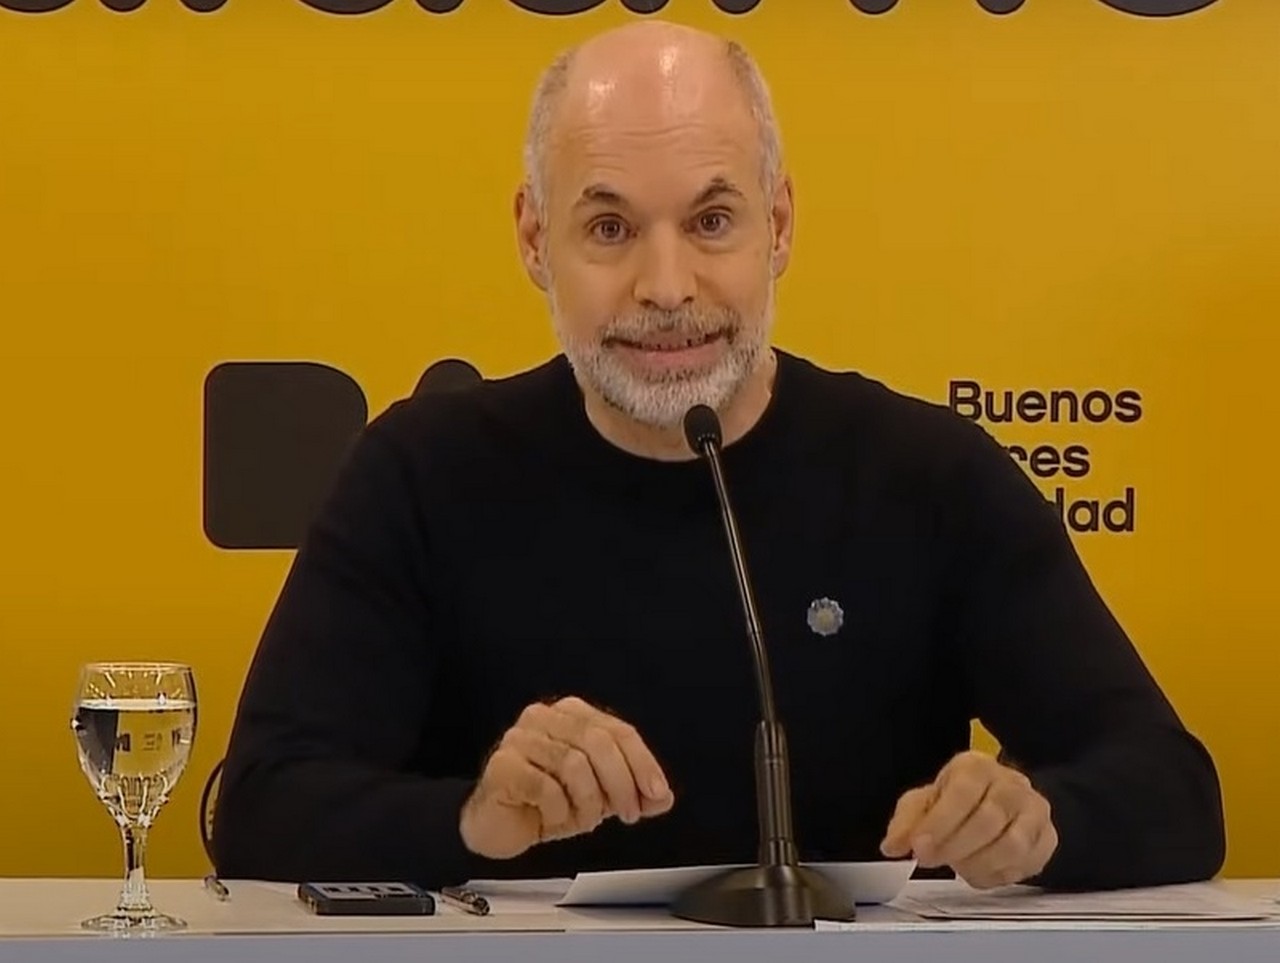 Horacio Rodríguez Larreta